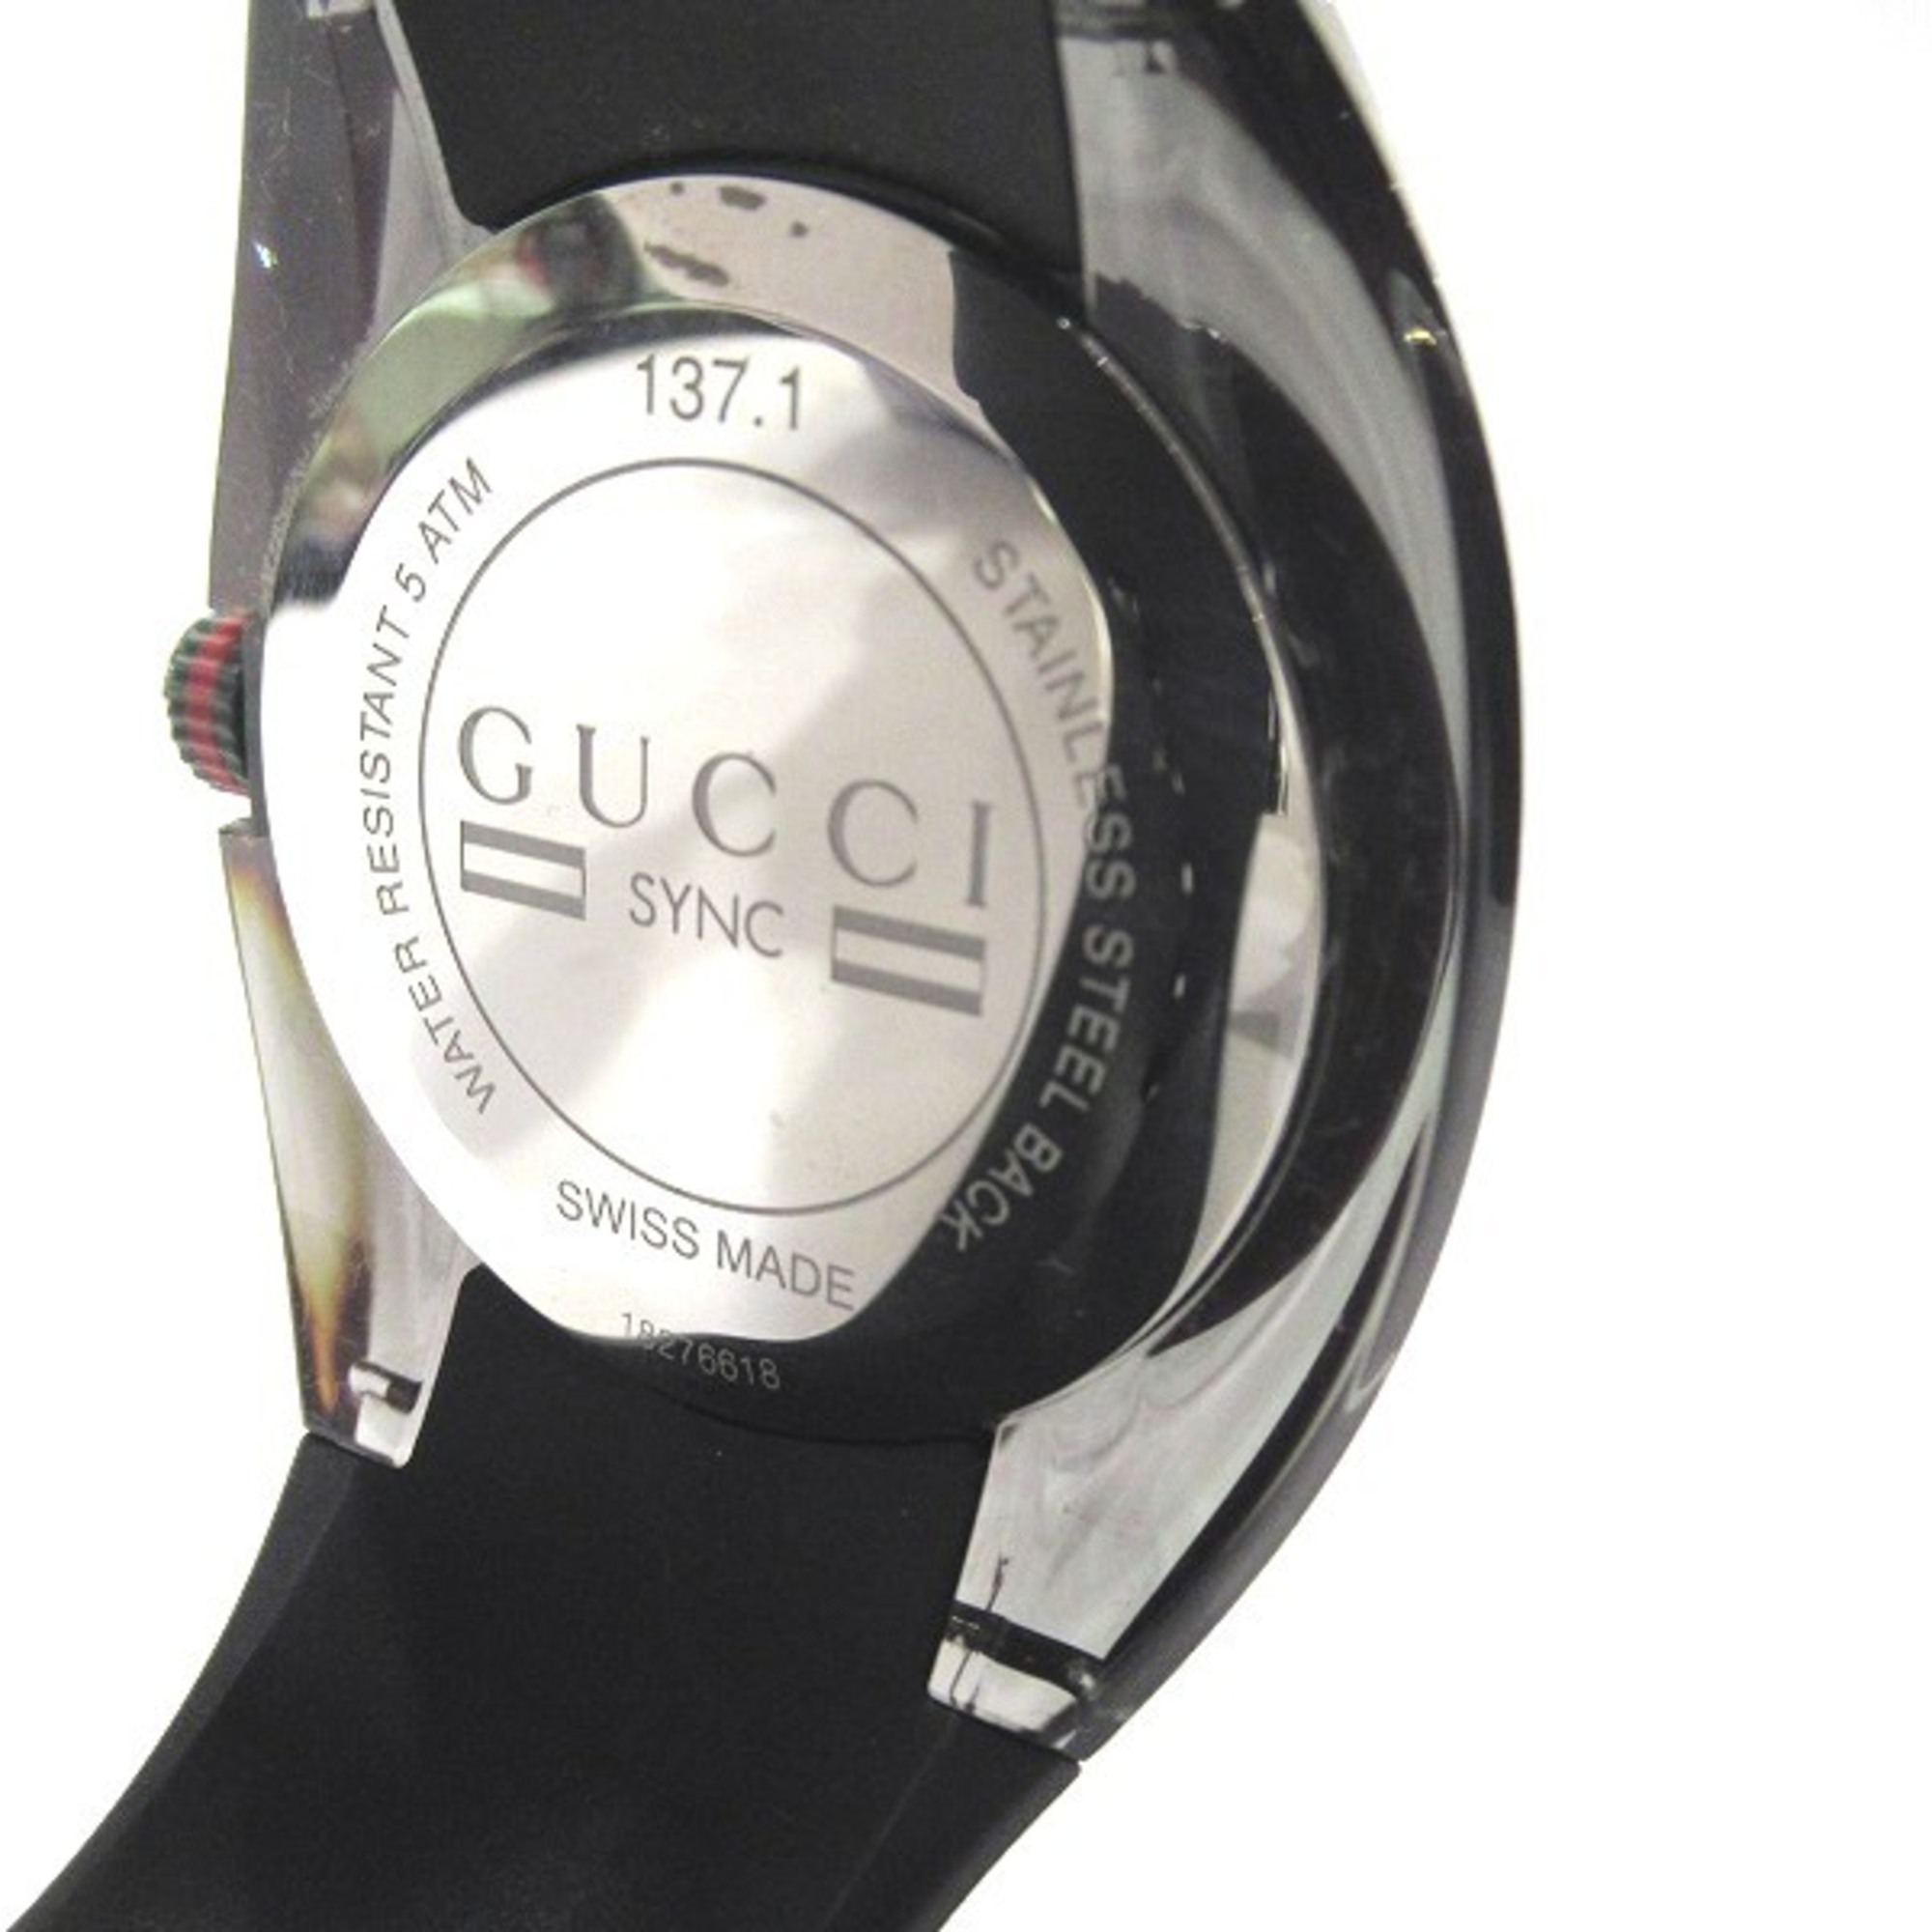 GUCCI Sync 137.1 Quartz Watch Men's